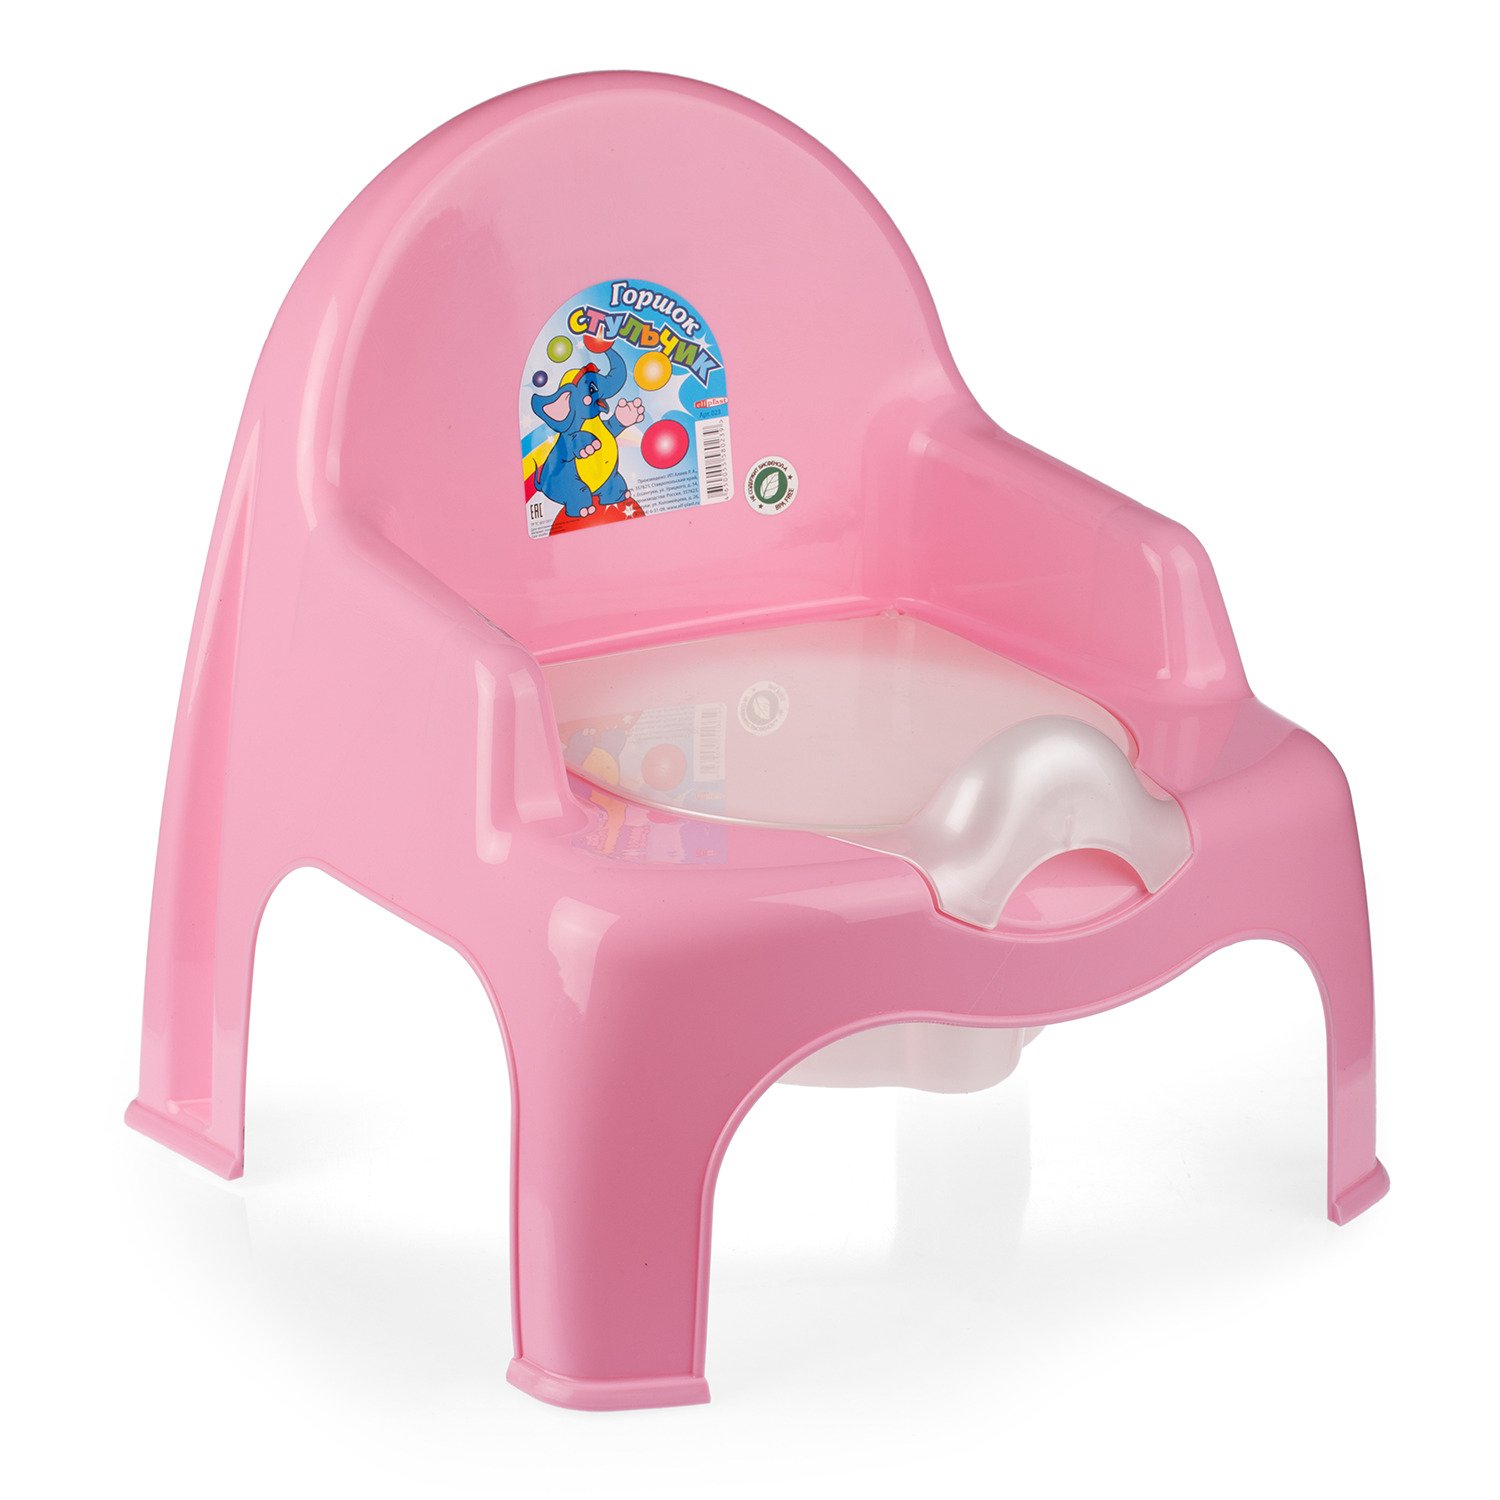 Горшок стульчик розовый на голове у ребенка